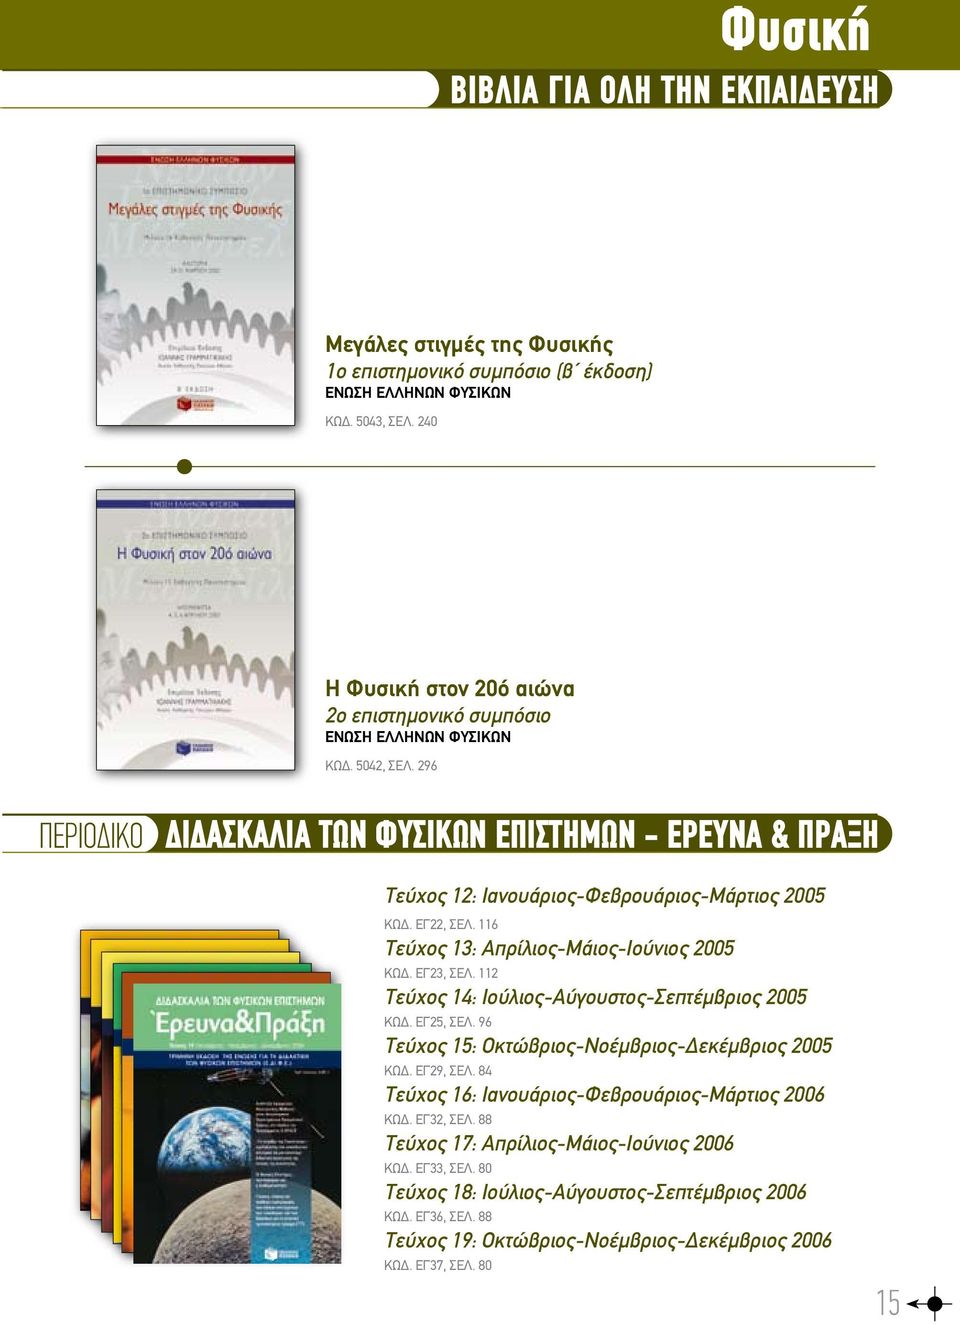 296 περιοδικο διδασκαλια των φυσικων επιστημων - ερευνα & πραξη Τεύχος 12: Ιανουάριος-Φεβρουάριος-Μάρτιος 2005 ΚΩΔ. ΕΓ22, ΣΕΛ. 116 Τεύχος 13: Απρίλιος-Μάιος-Ιούνιος 2005 ΚΩΔ. ΕΓ23, ΣΕΛ.